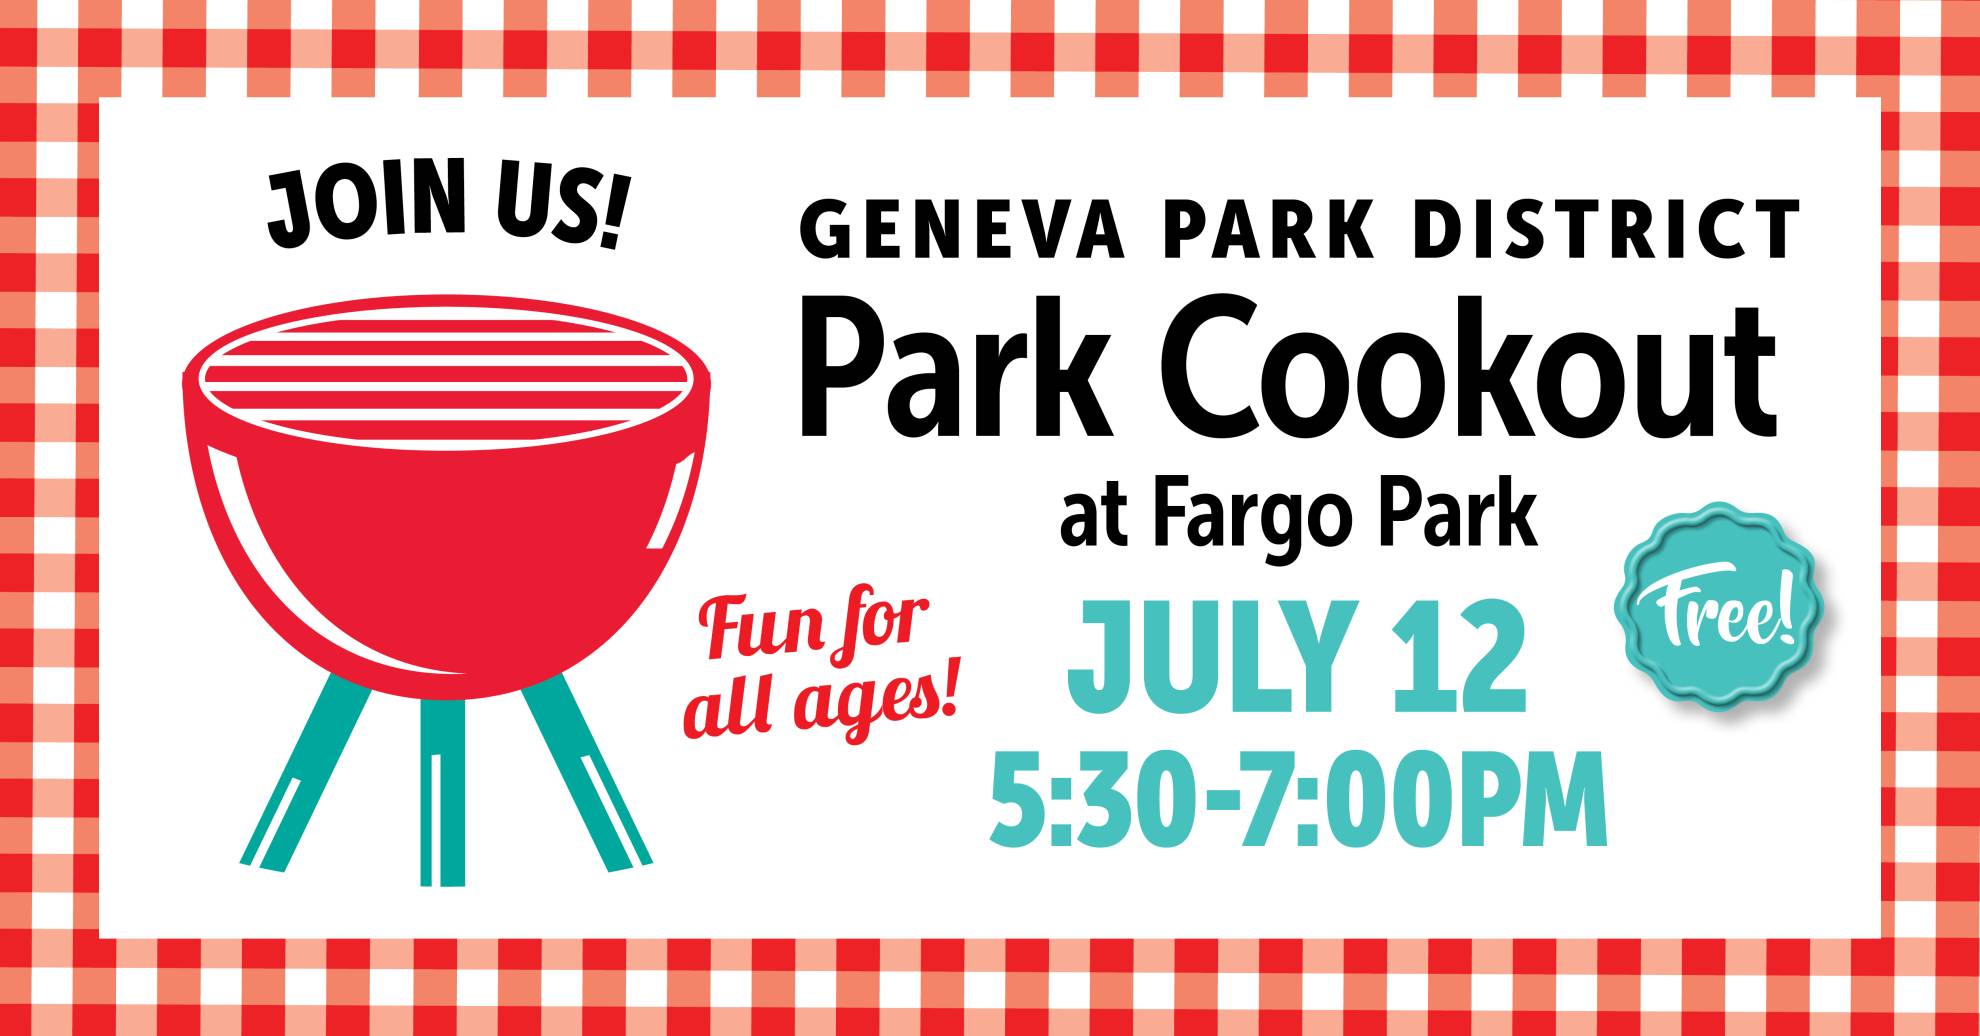 Park Cookout: Fargo Park